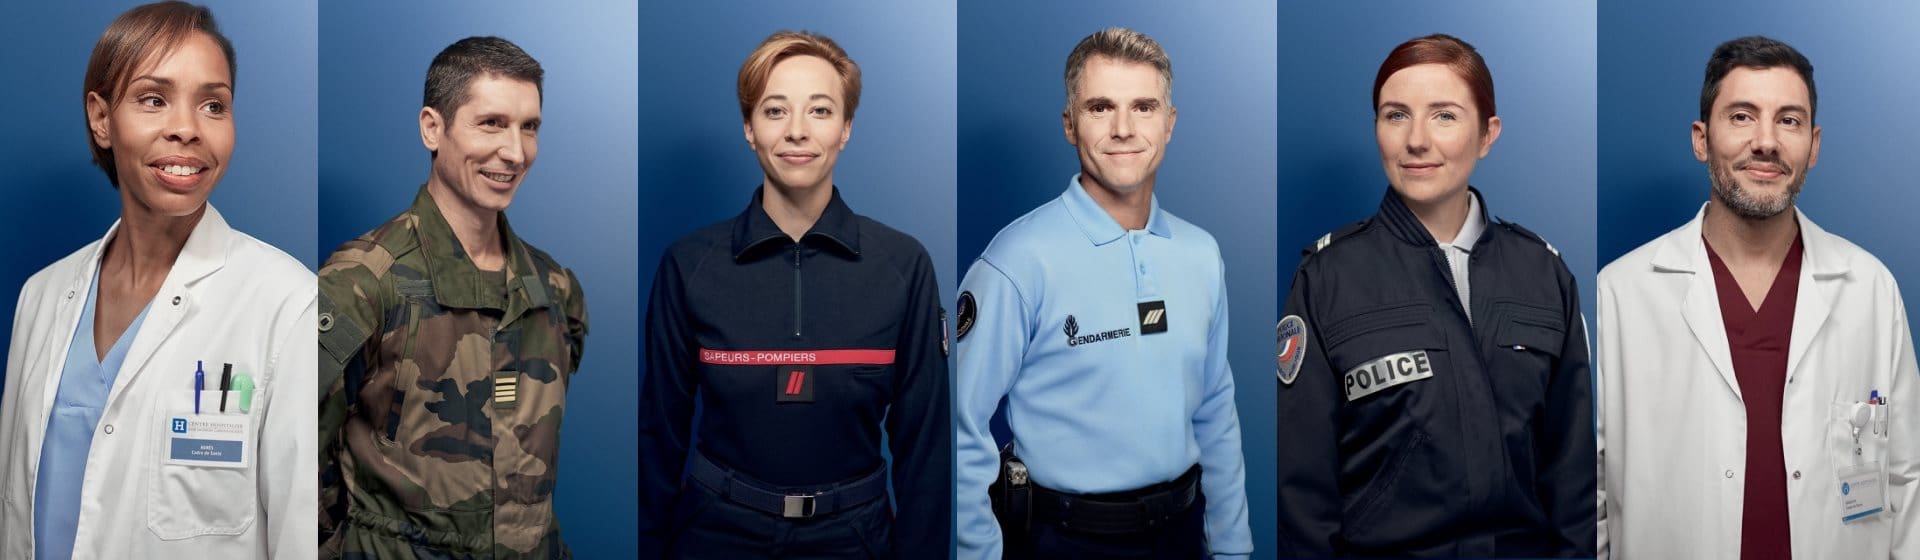 Femme sapeur-pompier et homme gendarme avec le sourire